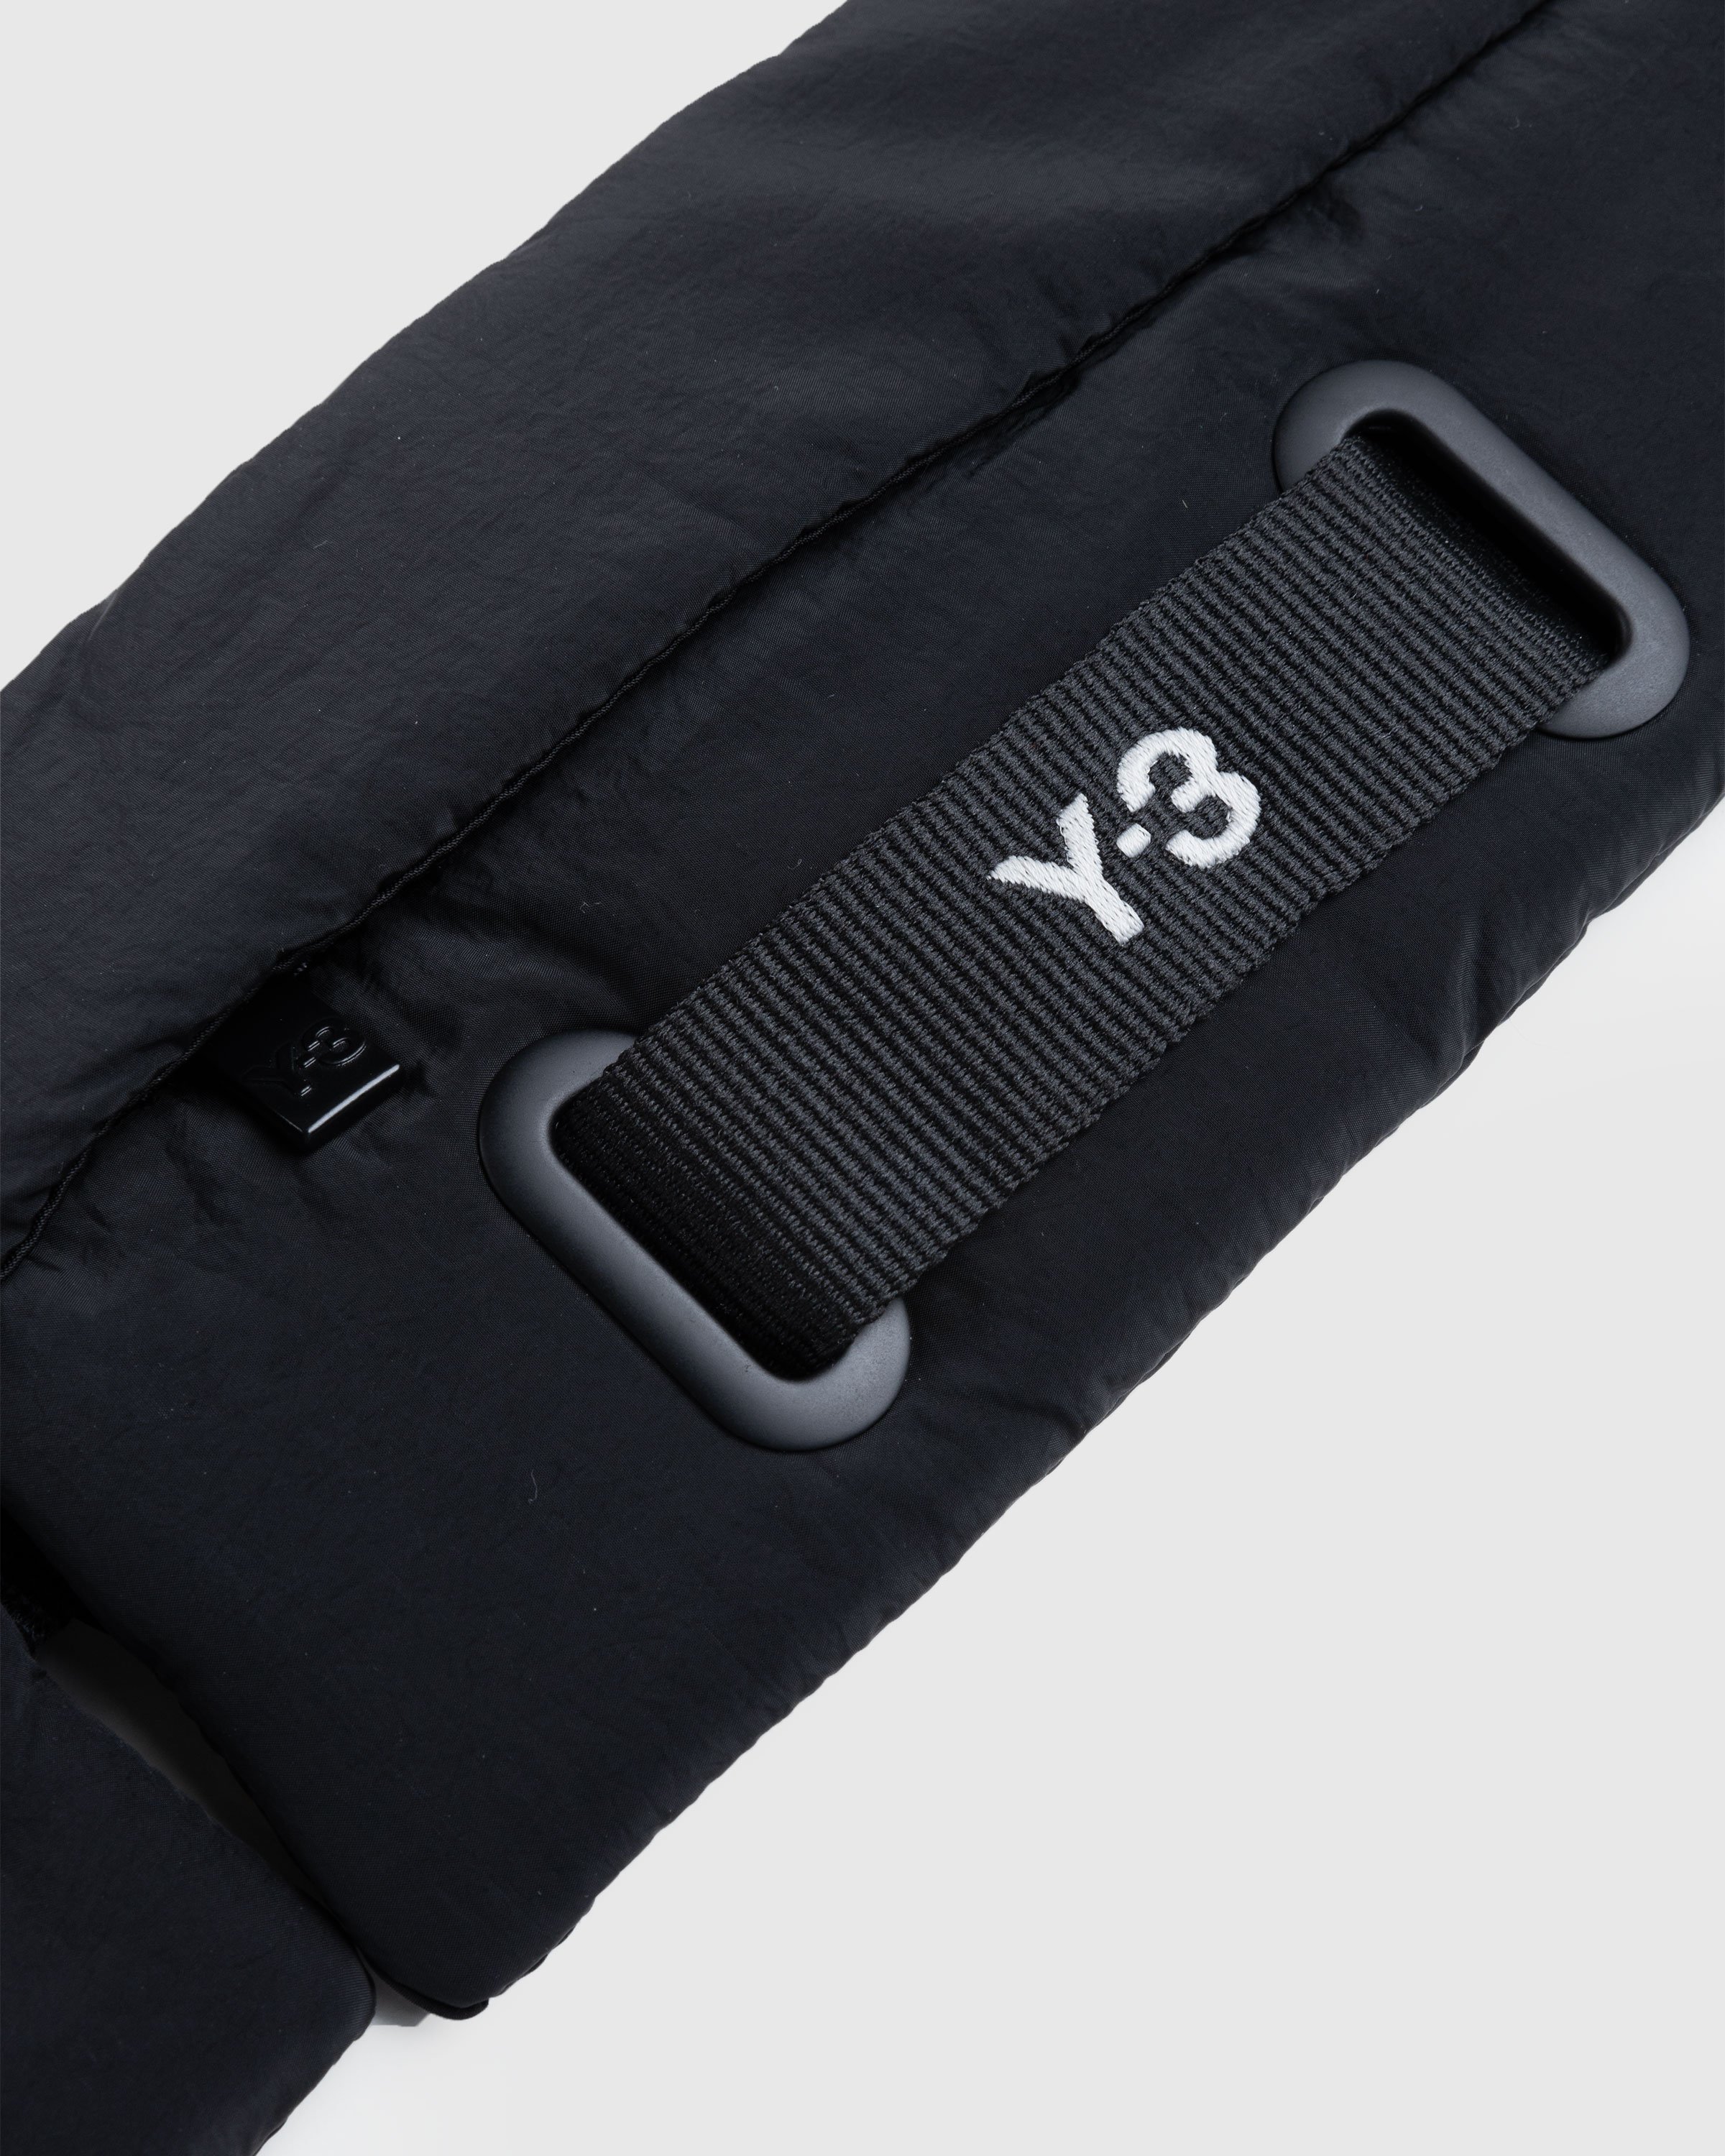 Y-3 - Crinkled Crossbody Bag Black - Accessories - Black - Image 4